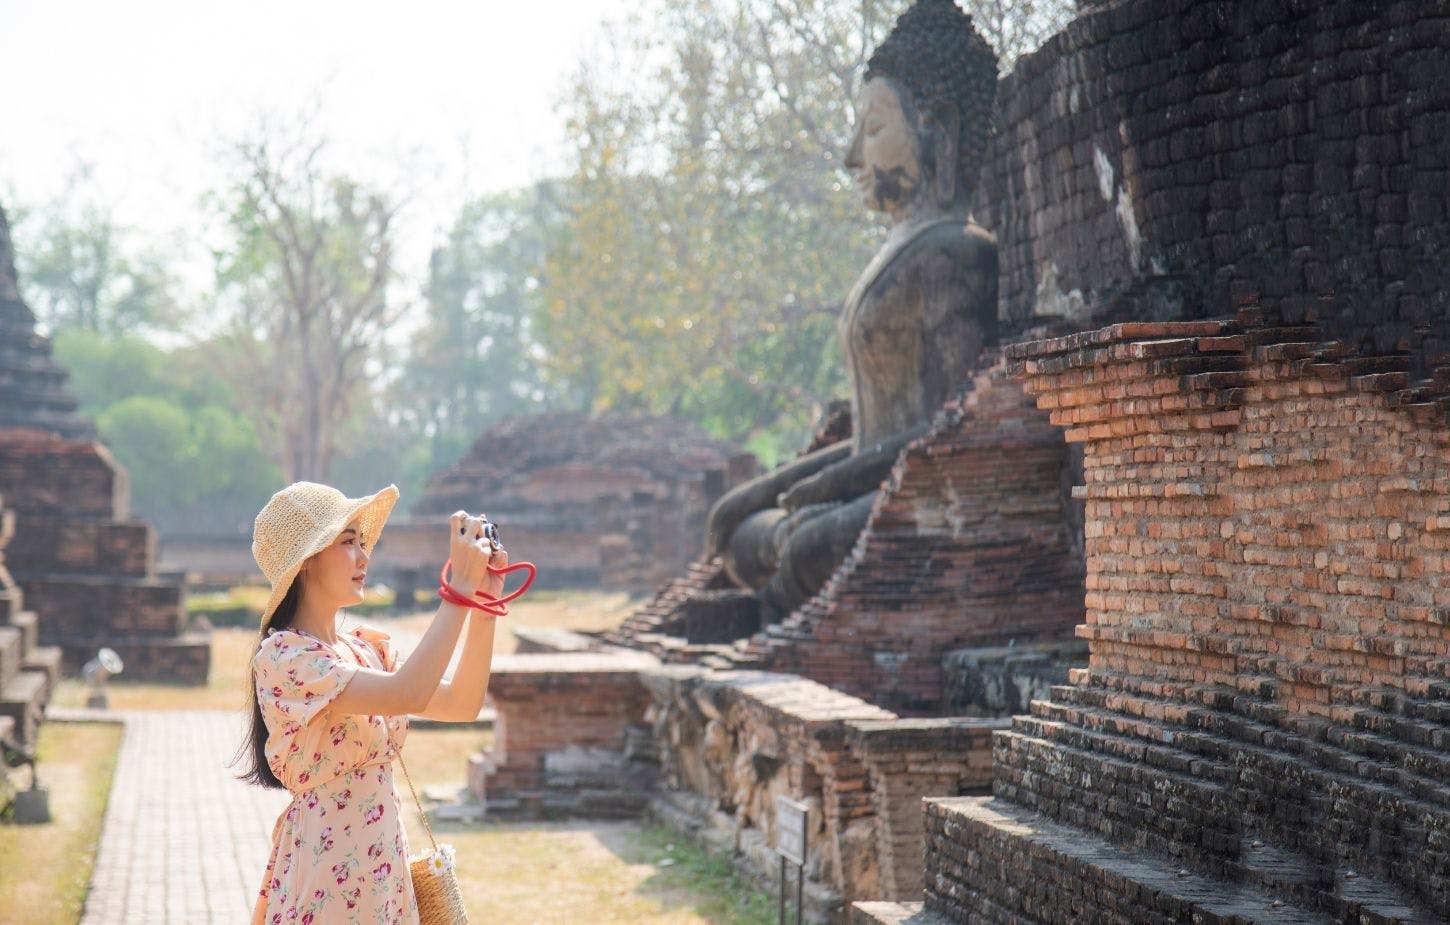 Ganztägige Tour durch die historische Stadt Ayutthaya